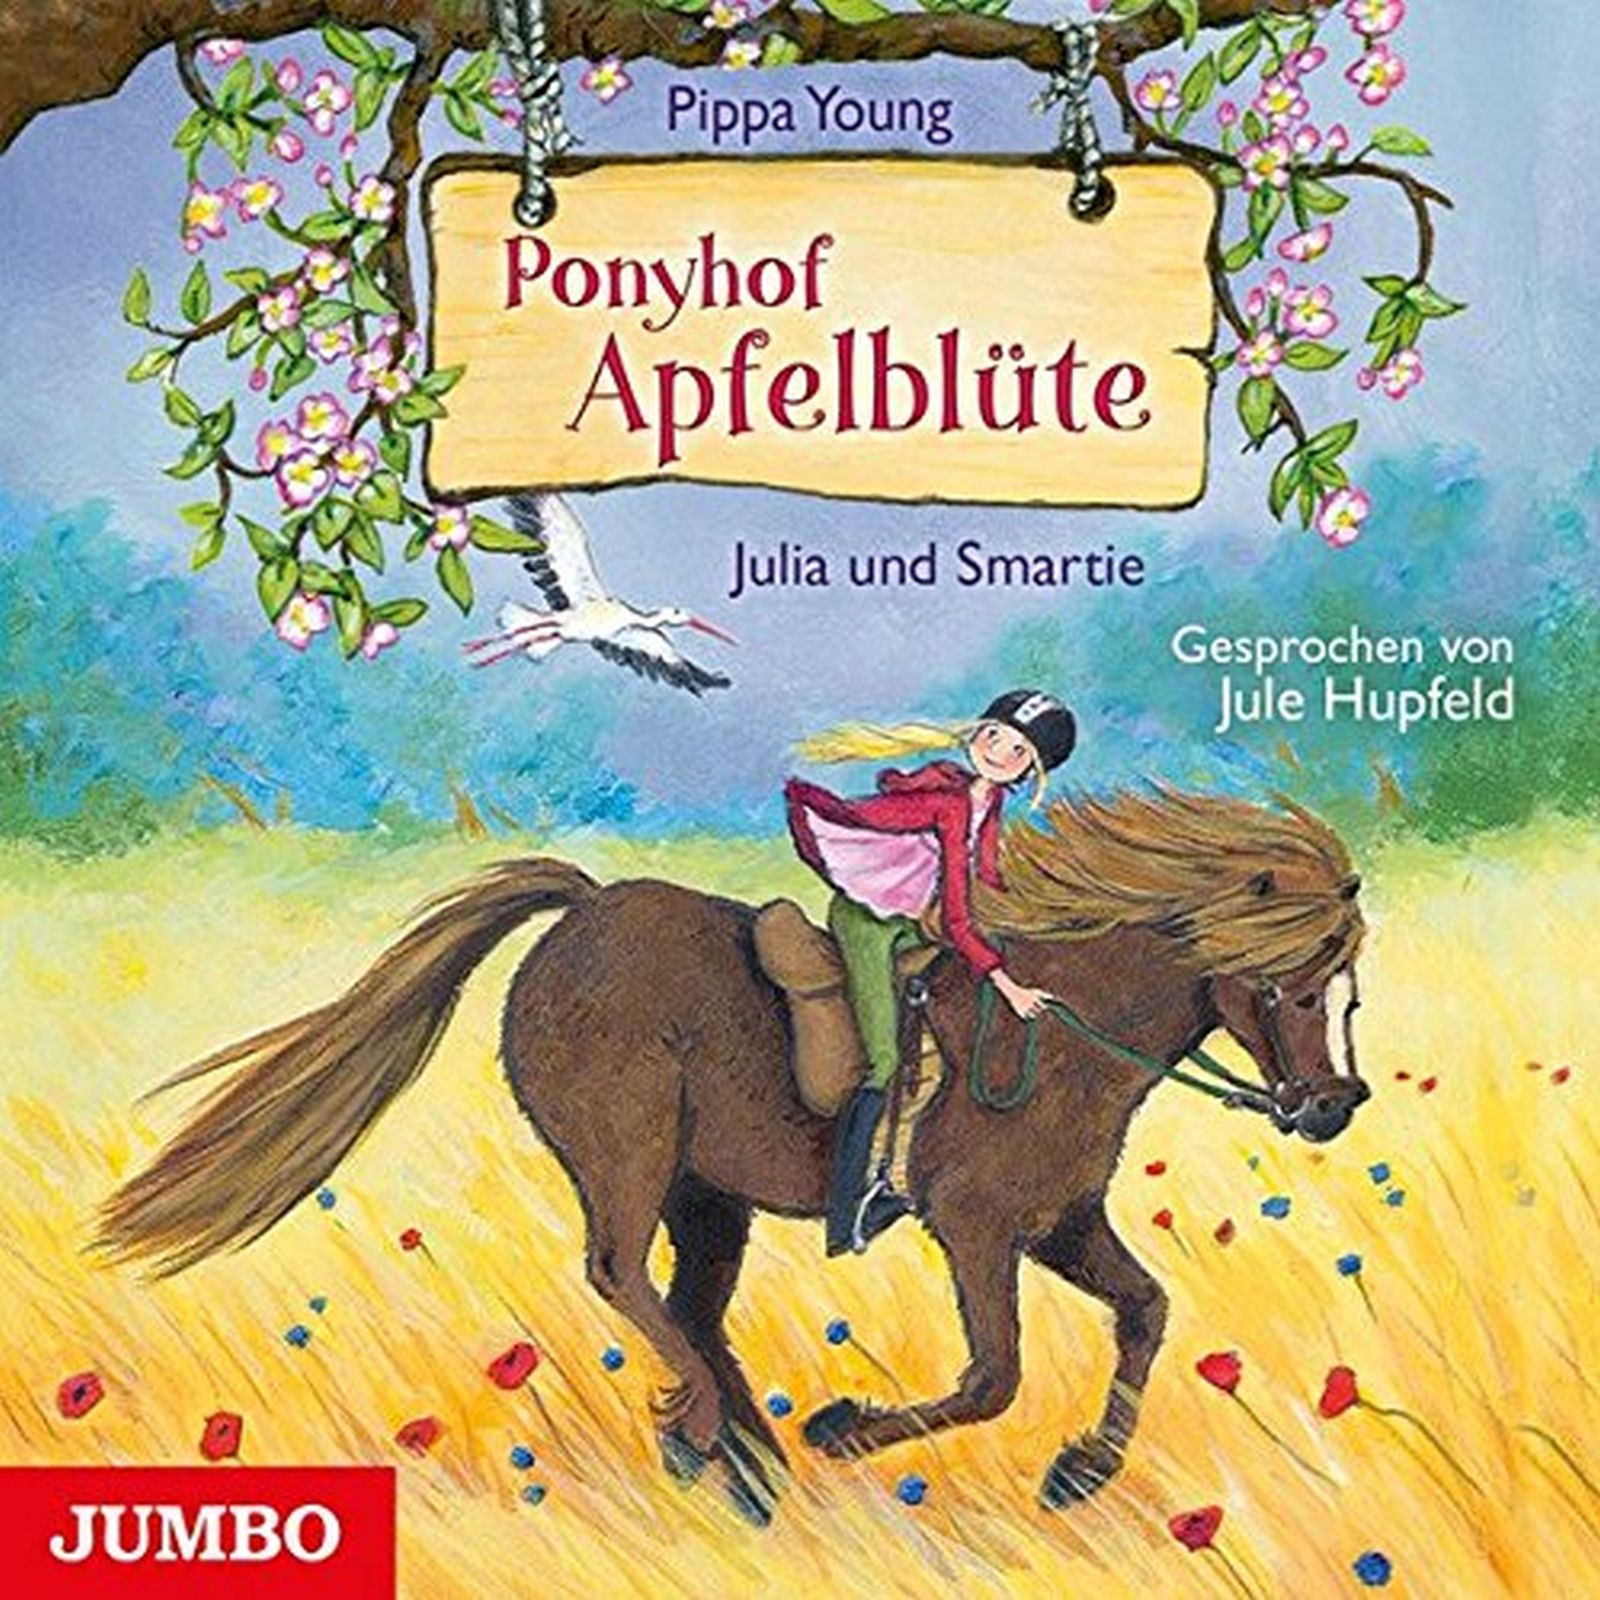 Ponyhof Apfelblüte [6] Julia und Smartie